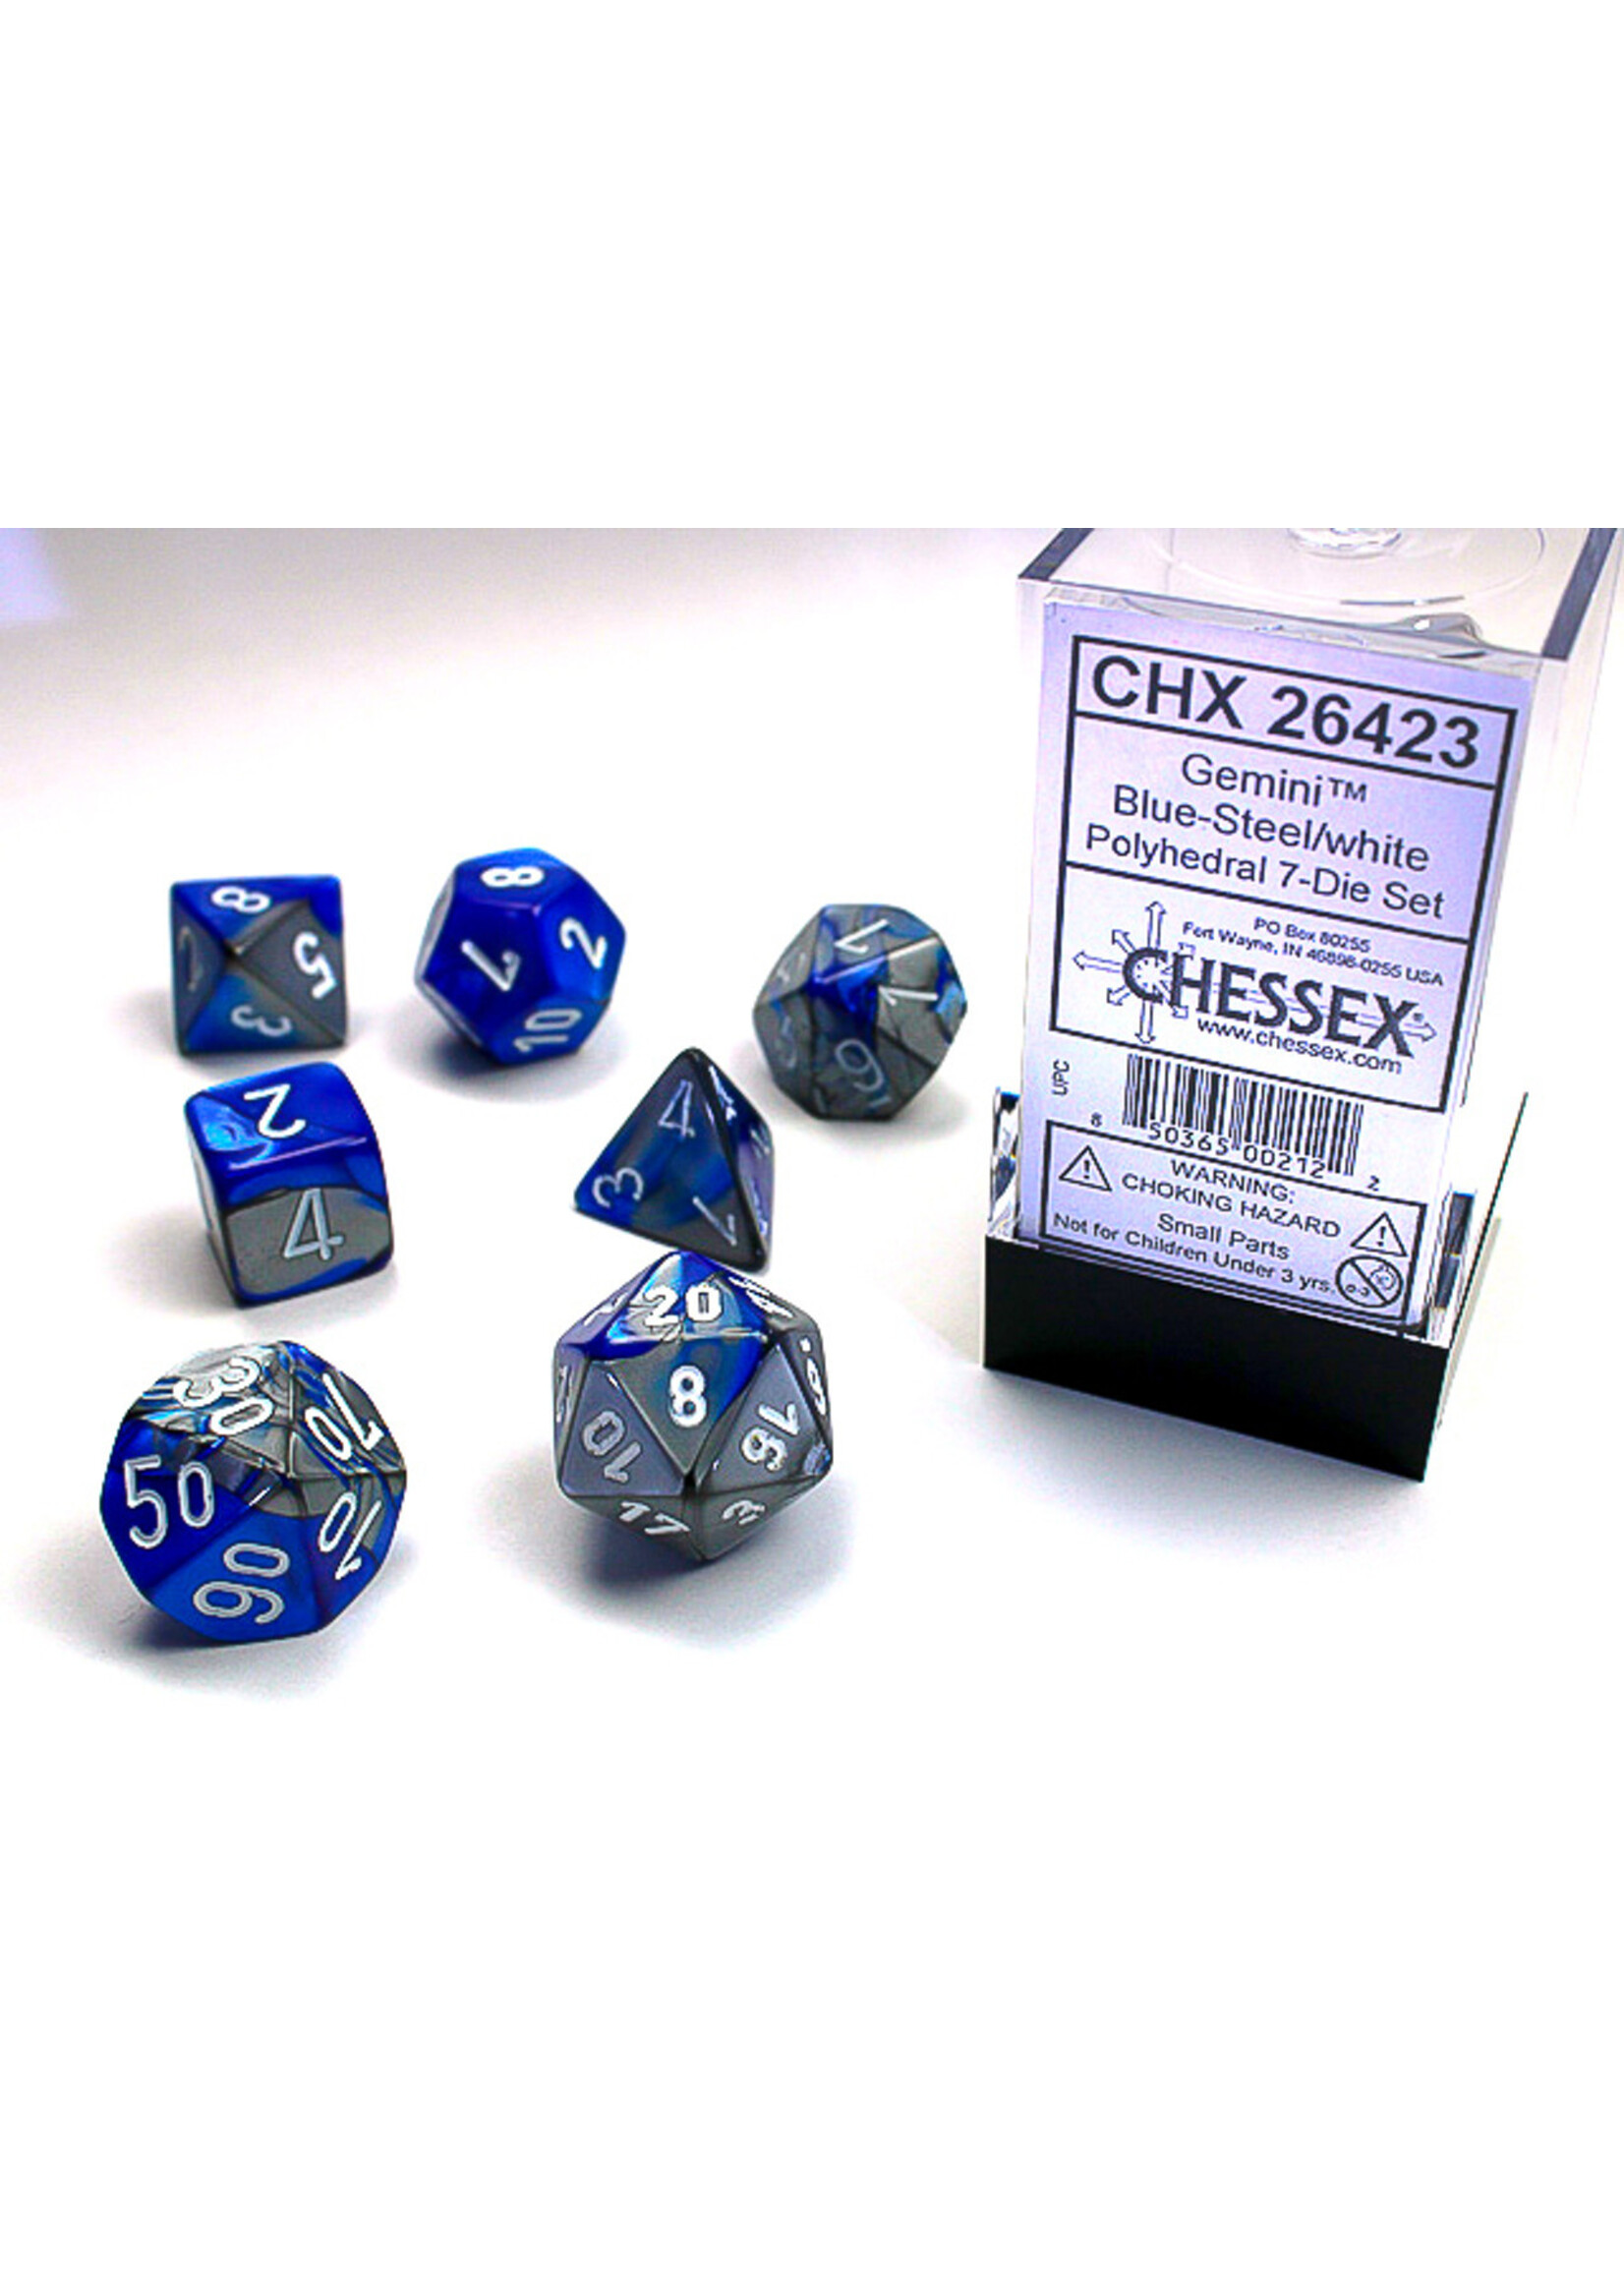 Chessex GMNI 7die blue-steel/white